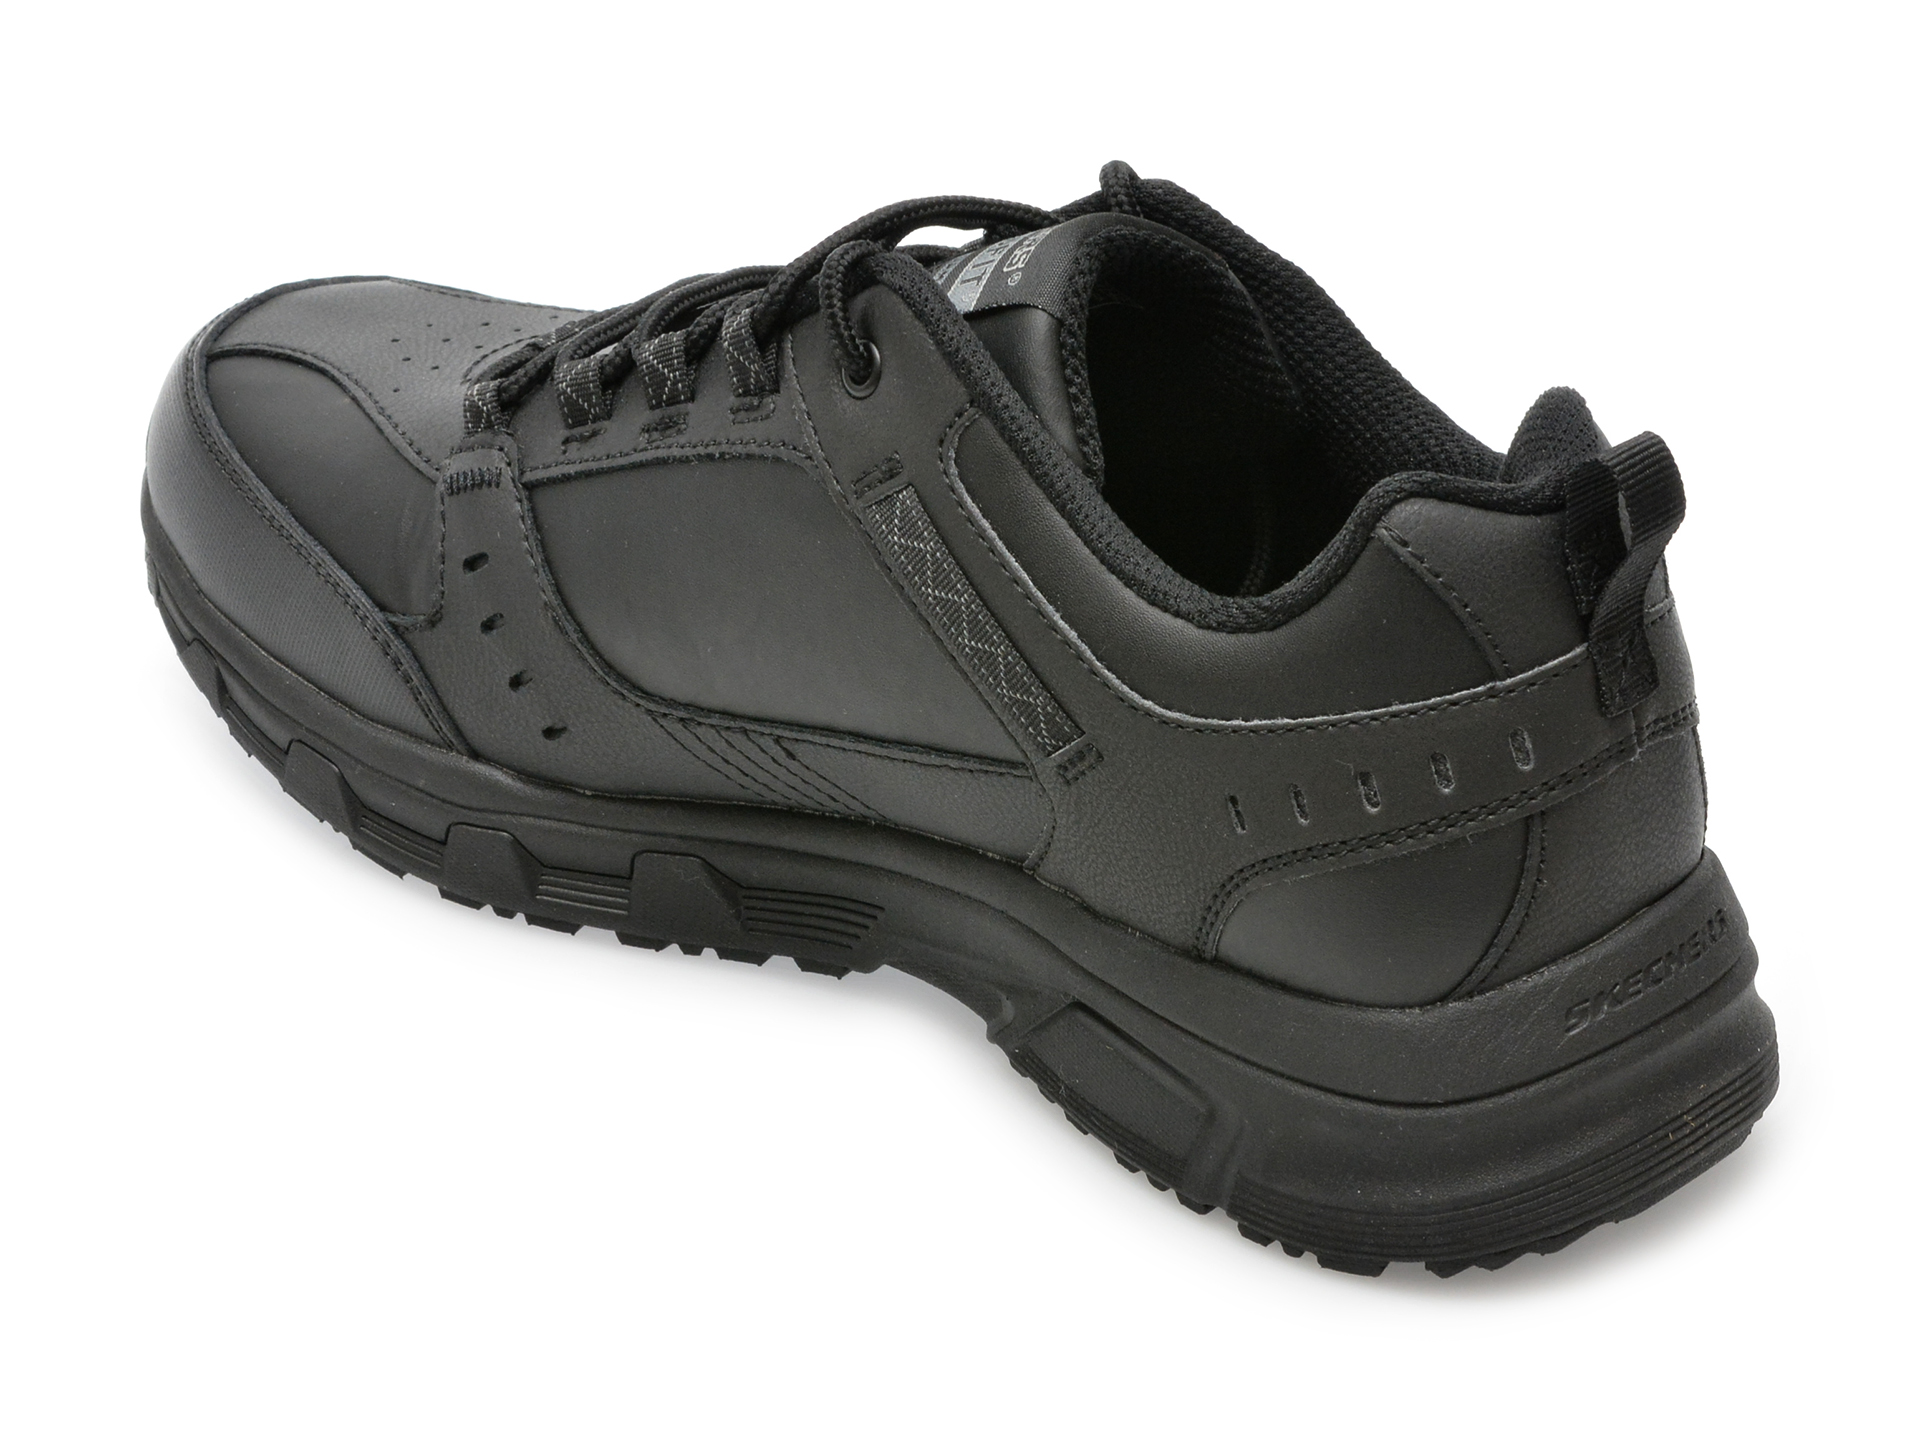 Poze Pantofi SKECHERS negri, OAK CANYON-REDWICK, din piele naturala